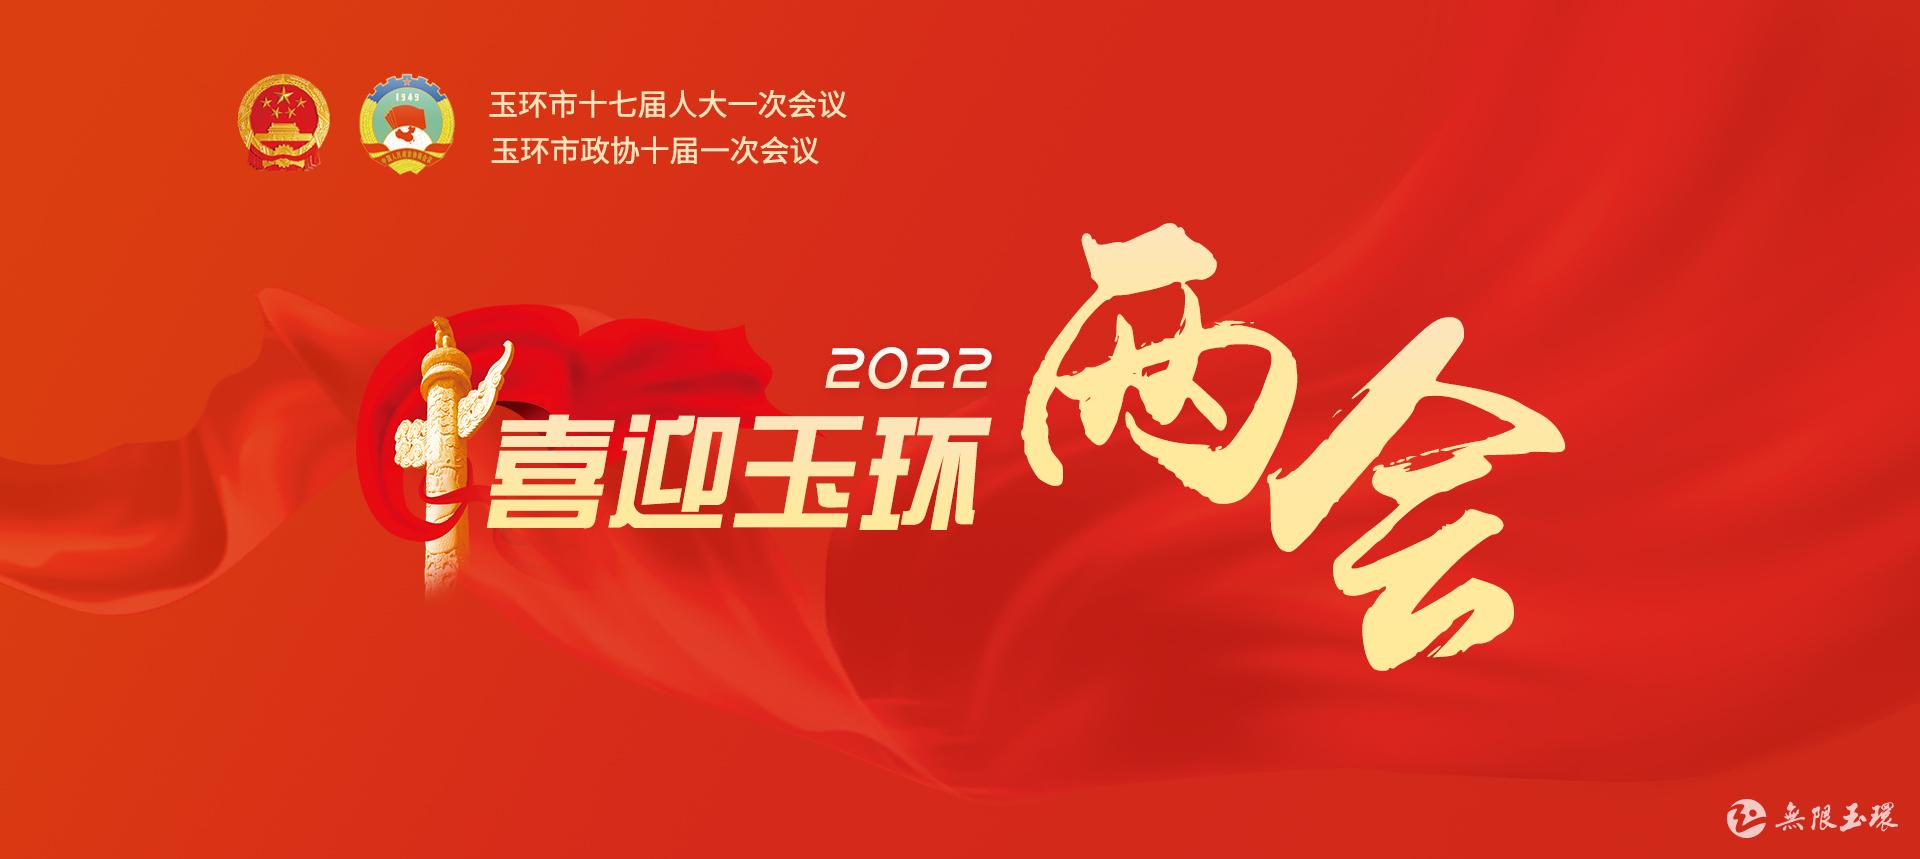 喜迎两会 2022 logo